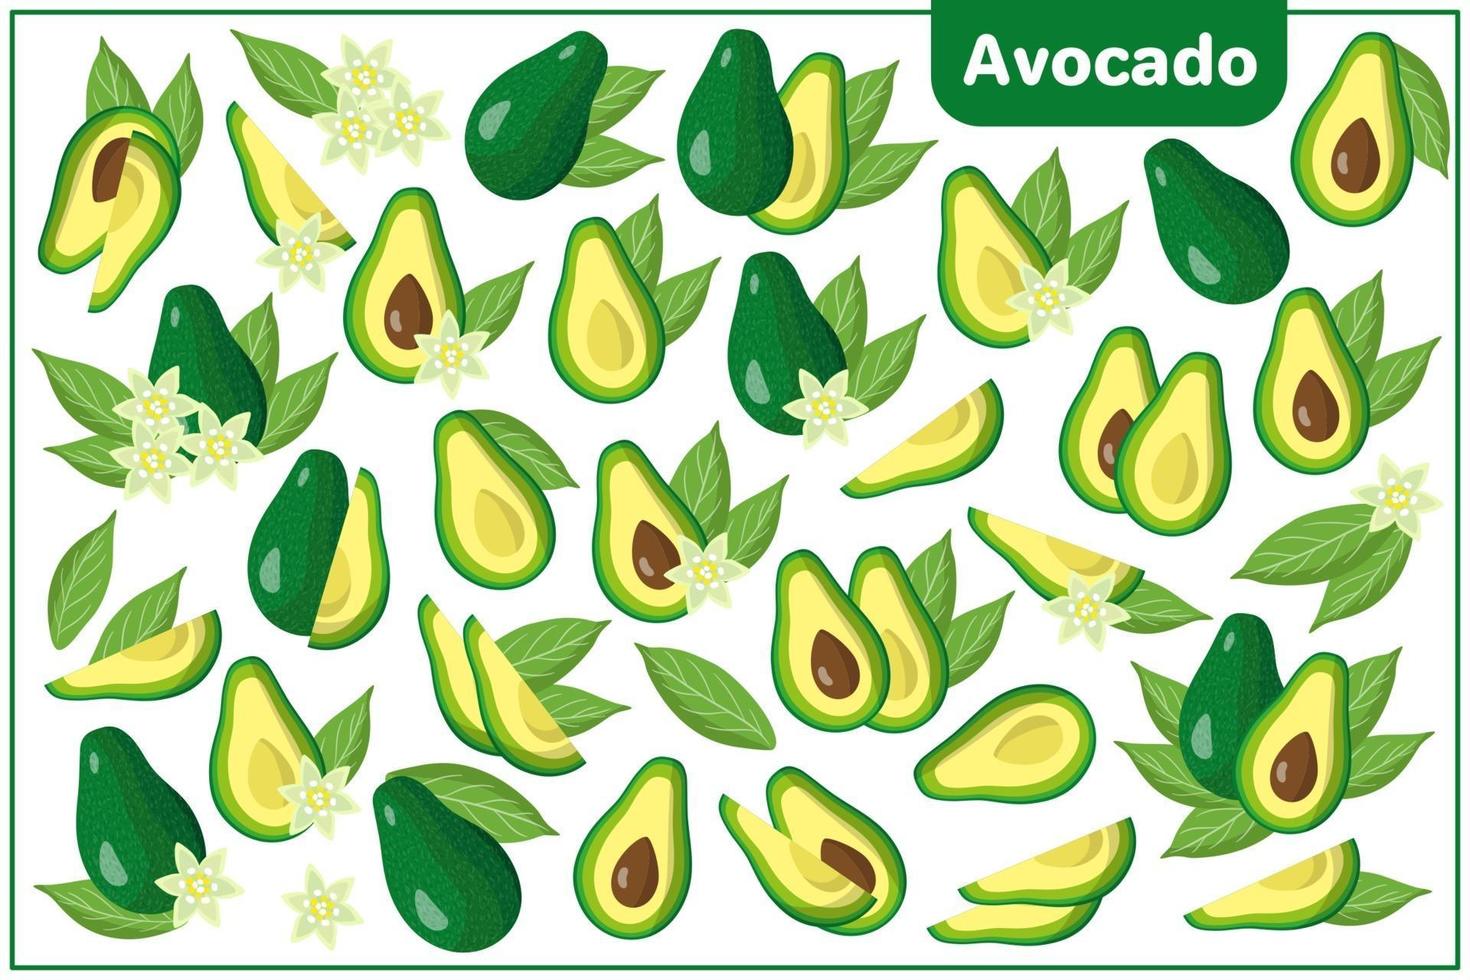 Satz Vektorkarikaturillustrationen mit exotischen Früchten, Blumen und Blättern der Avocado lokalisiert auf weißem Hintergrund vektor